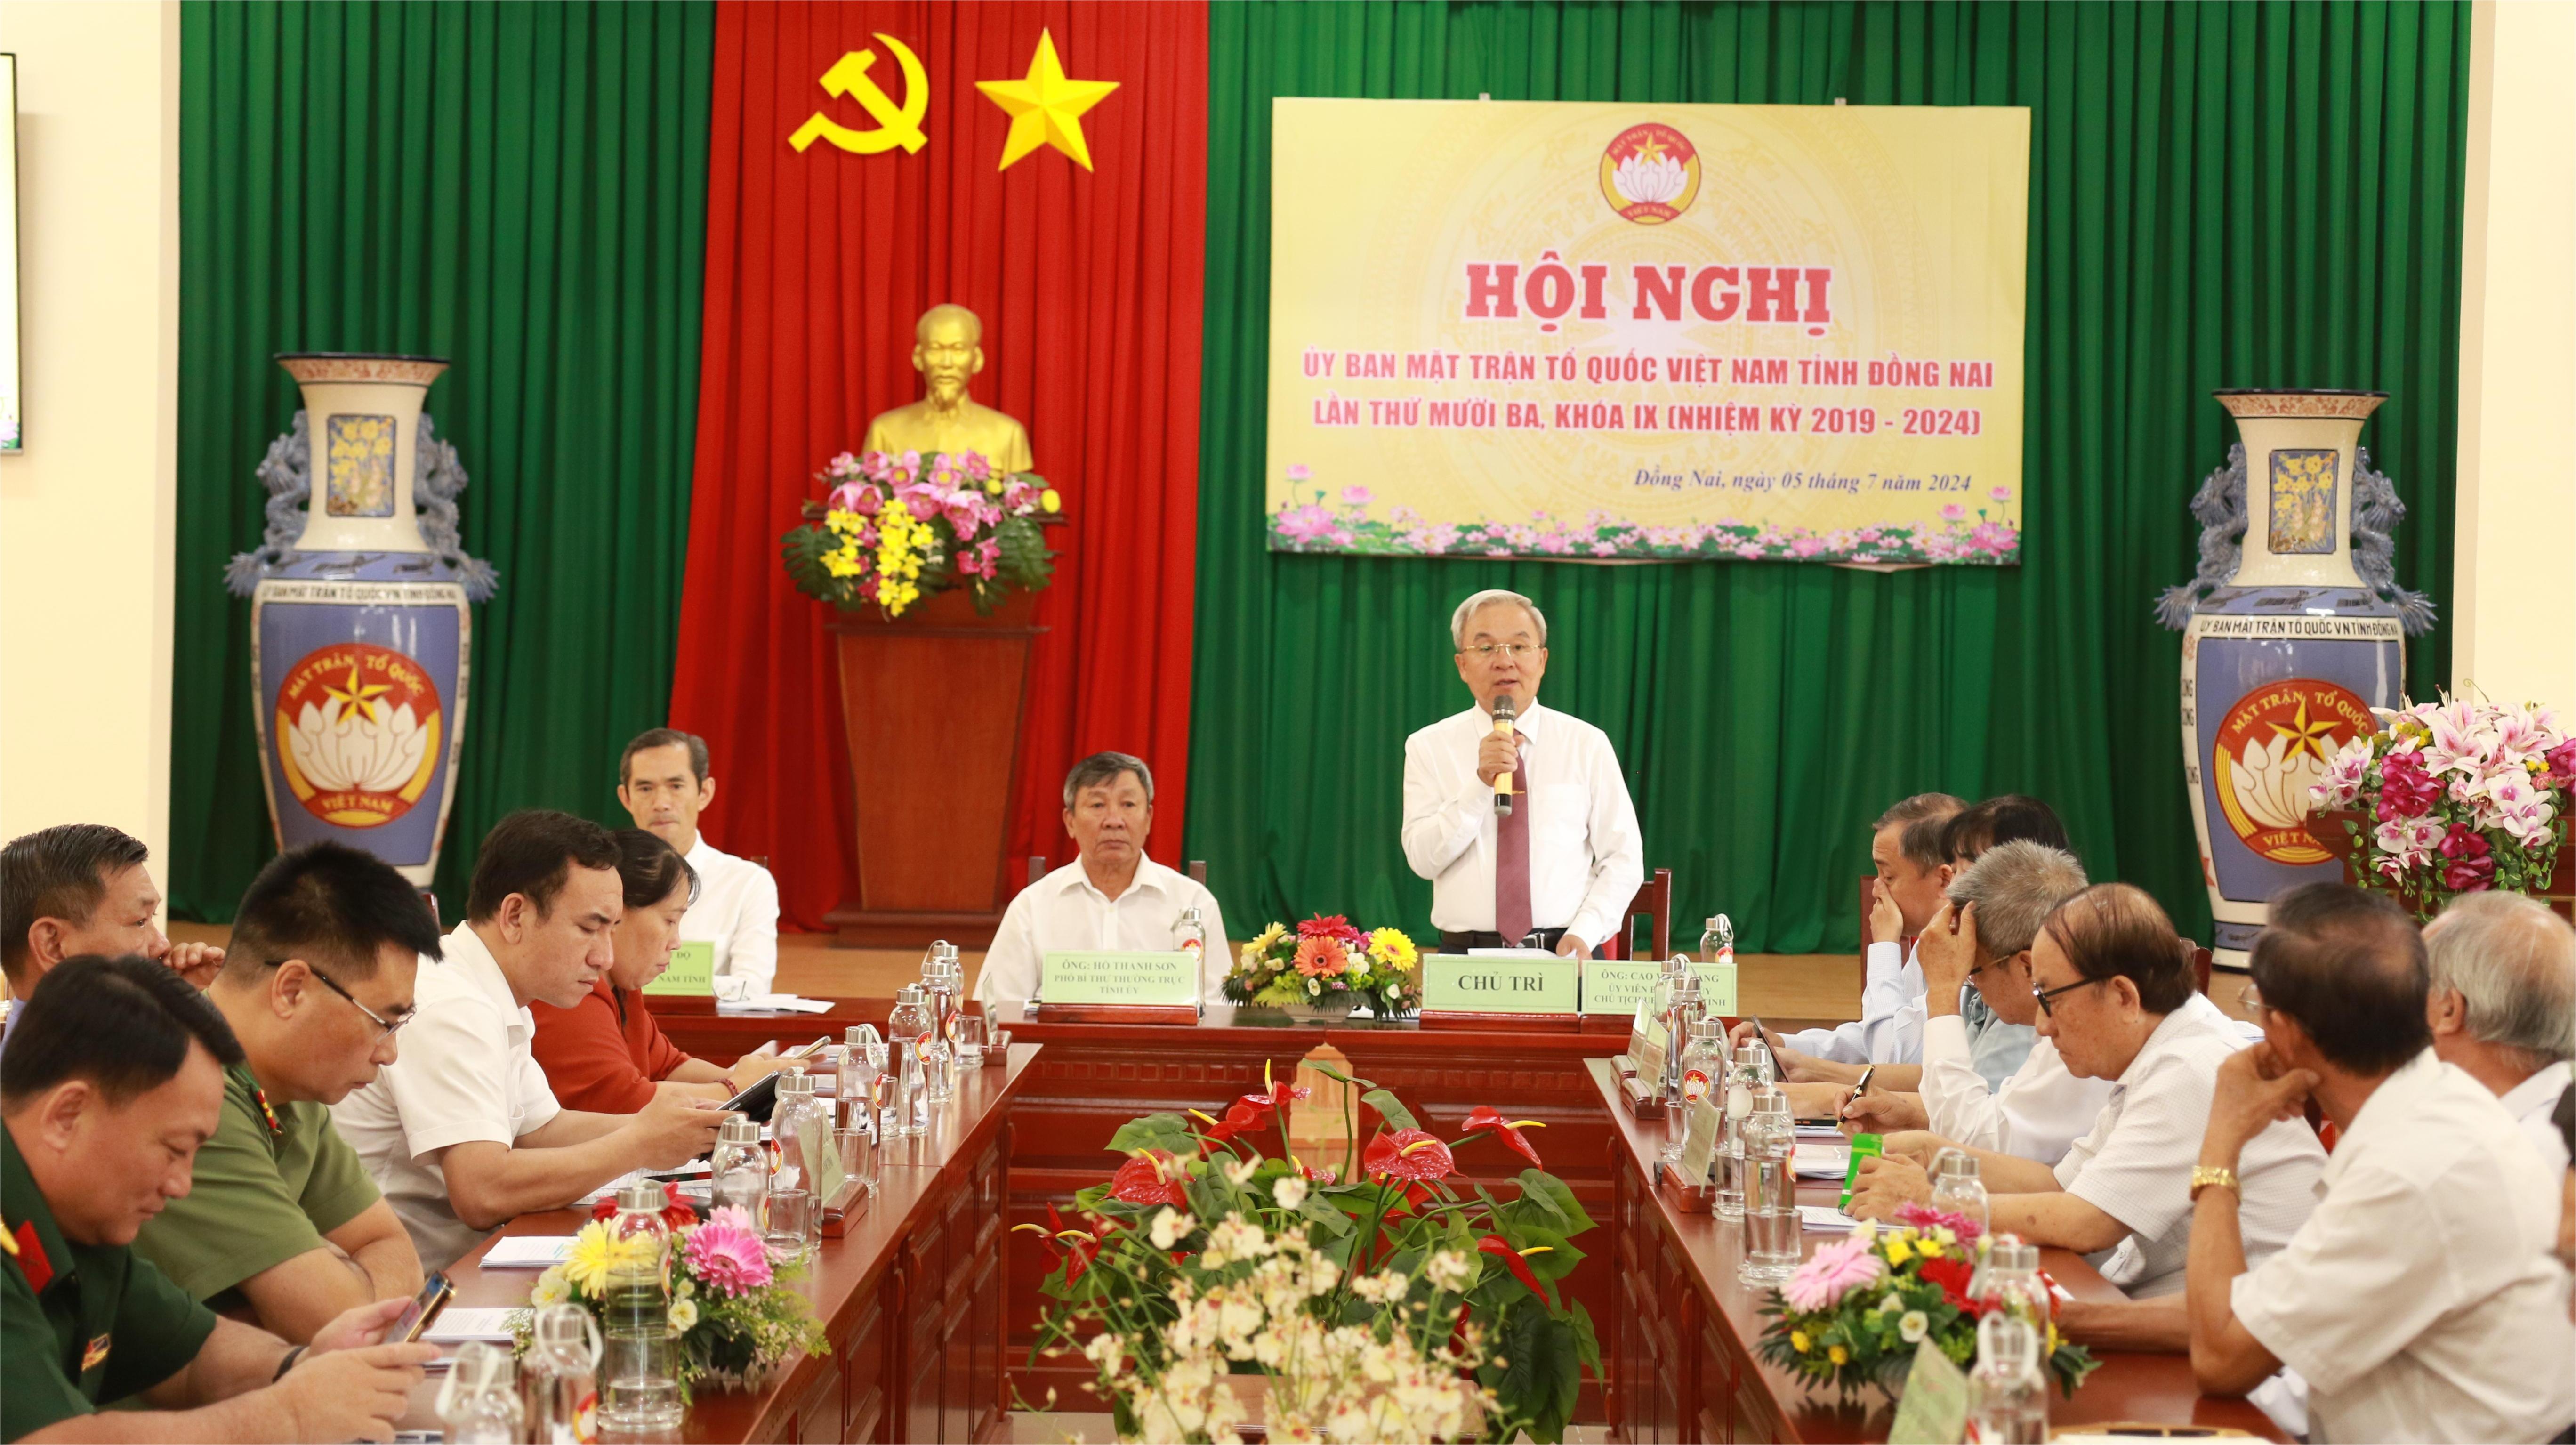 Ủy viên Ban Thường vụ Tỉnh ủy, Chủ tịch Ủy ban MTTQ Việt Nam tỉnh Cao Văn Quang phát biểu tại hội nghị. Ảnh: Sông Thao

